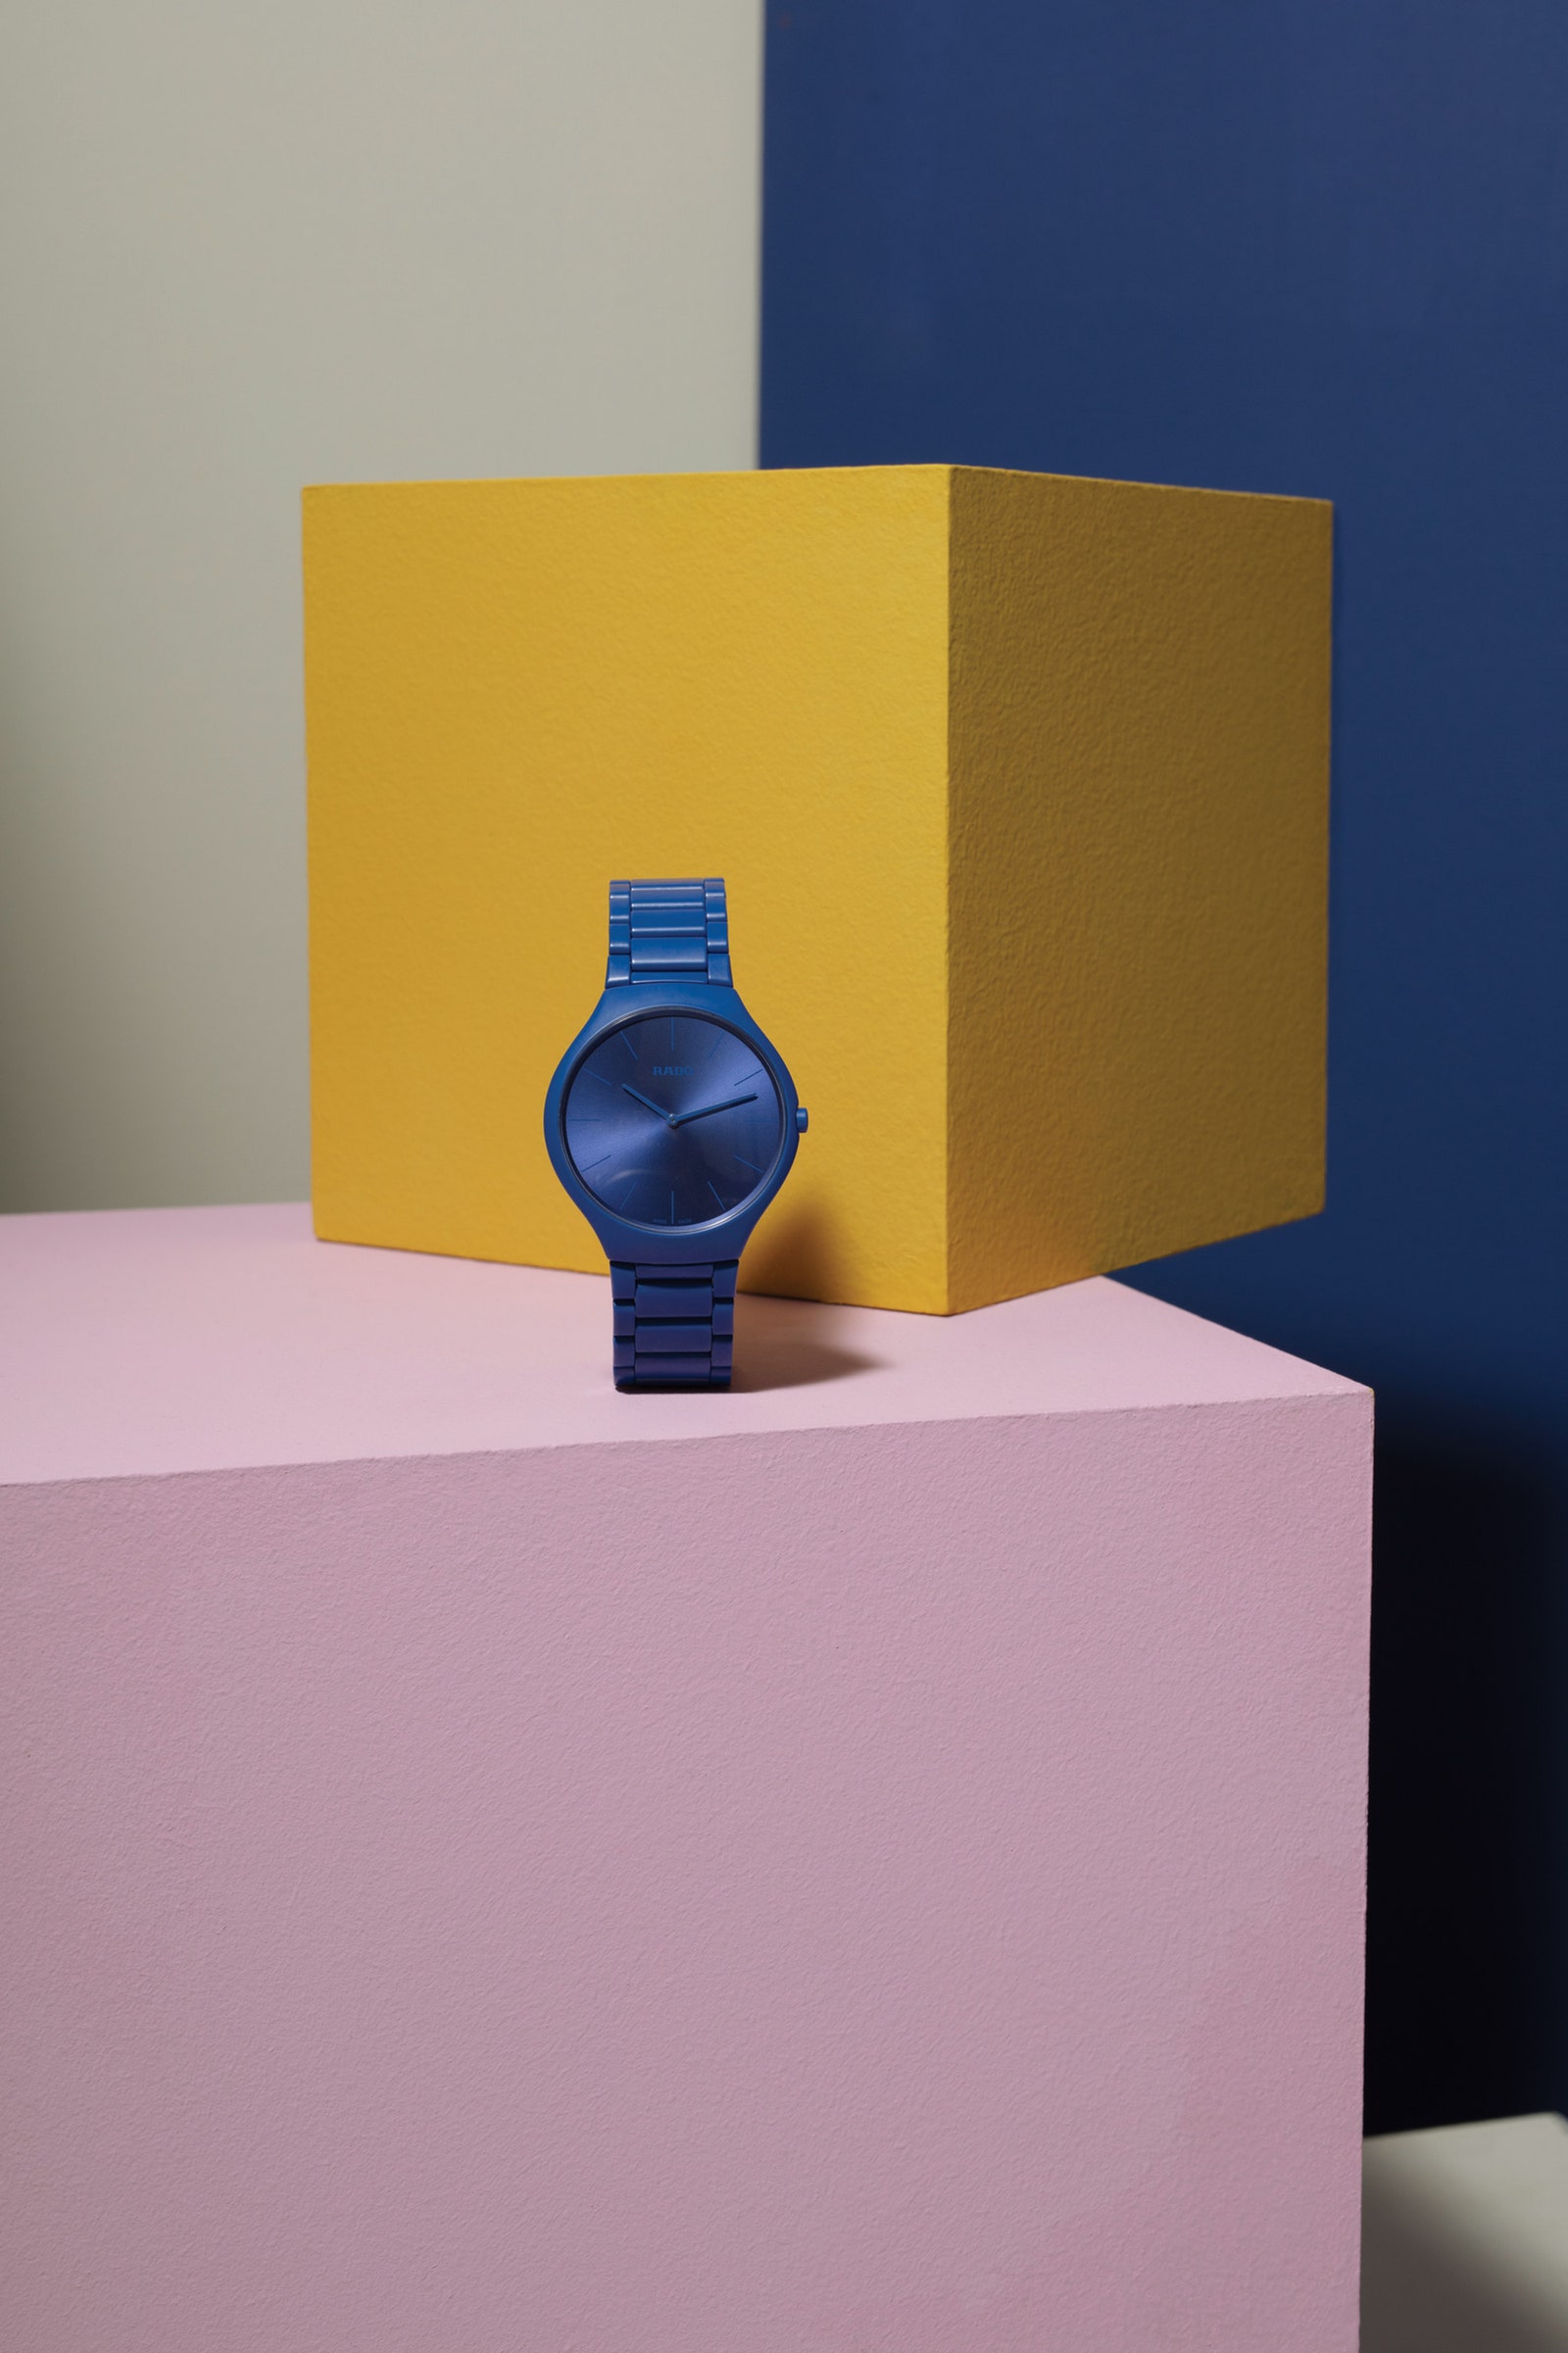 Rado представила коллекцию часов в цветах “архитектурной полихромии” Ле Корбюзье